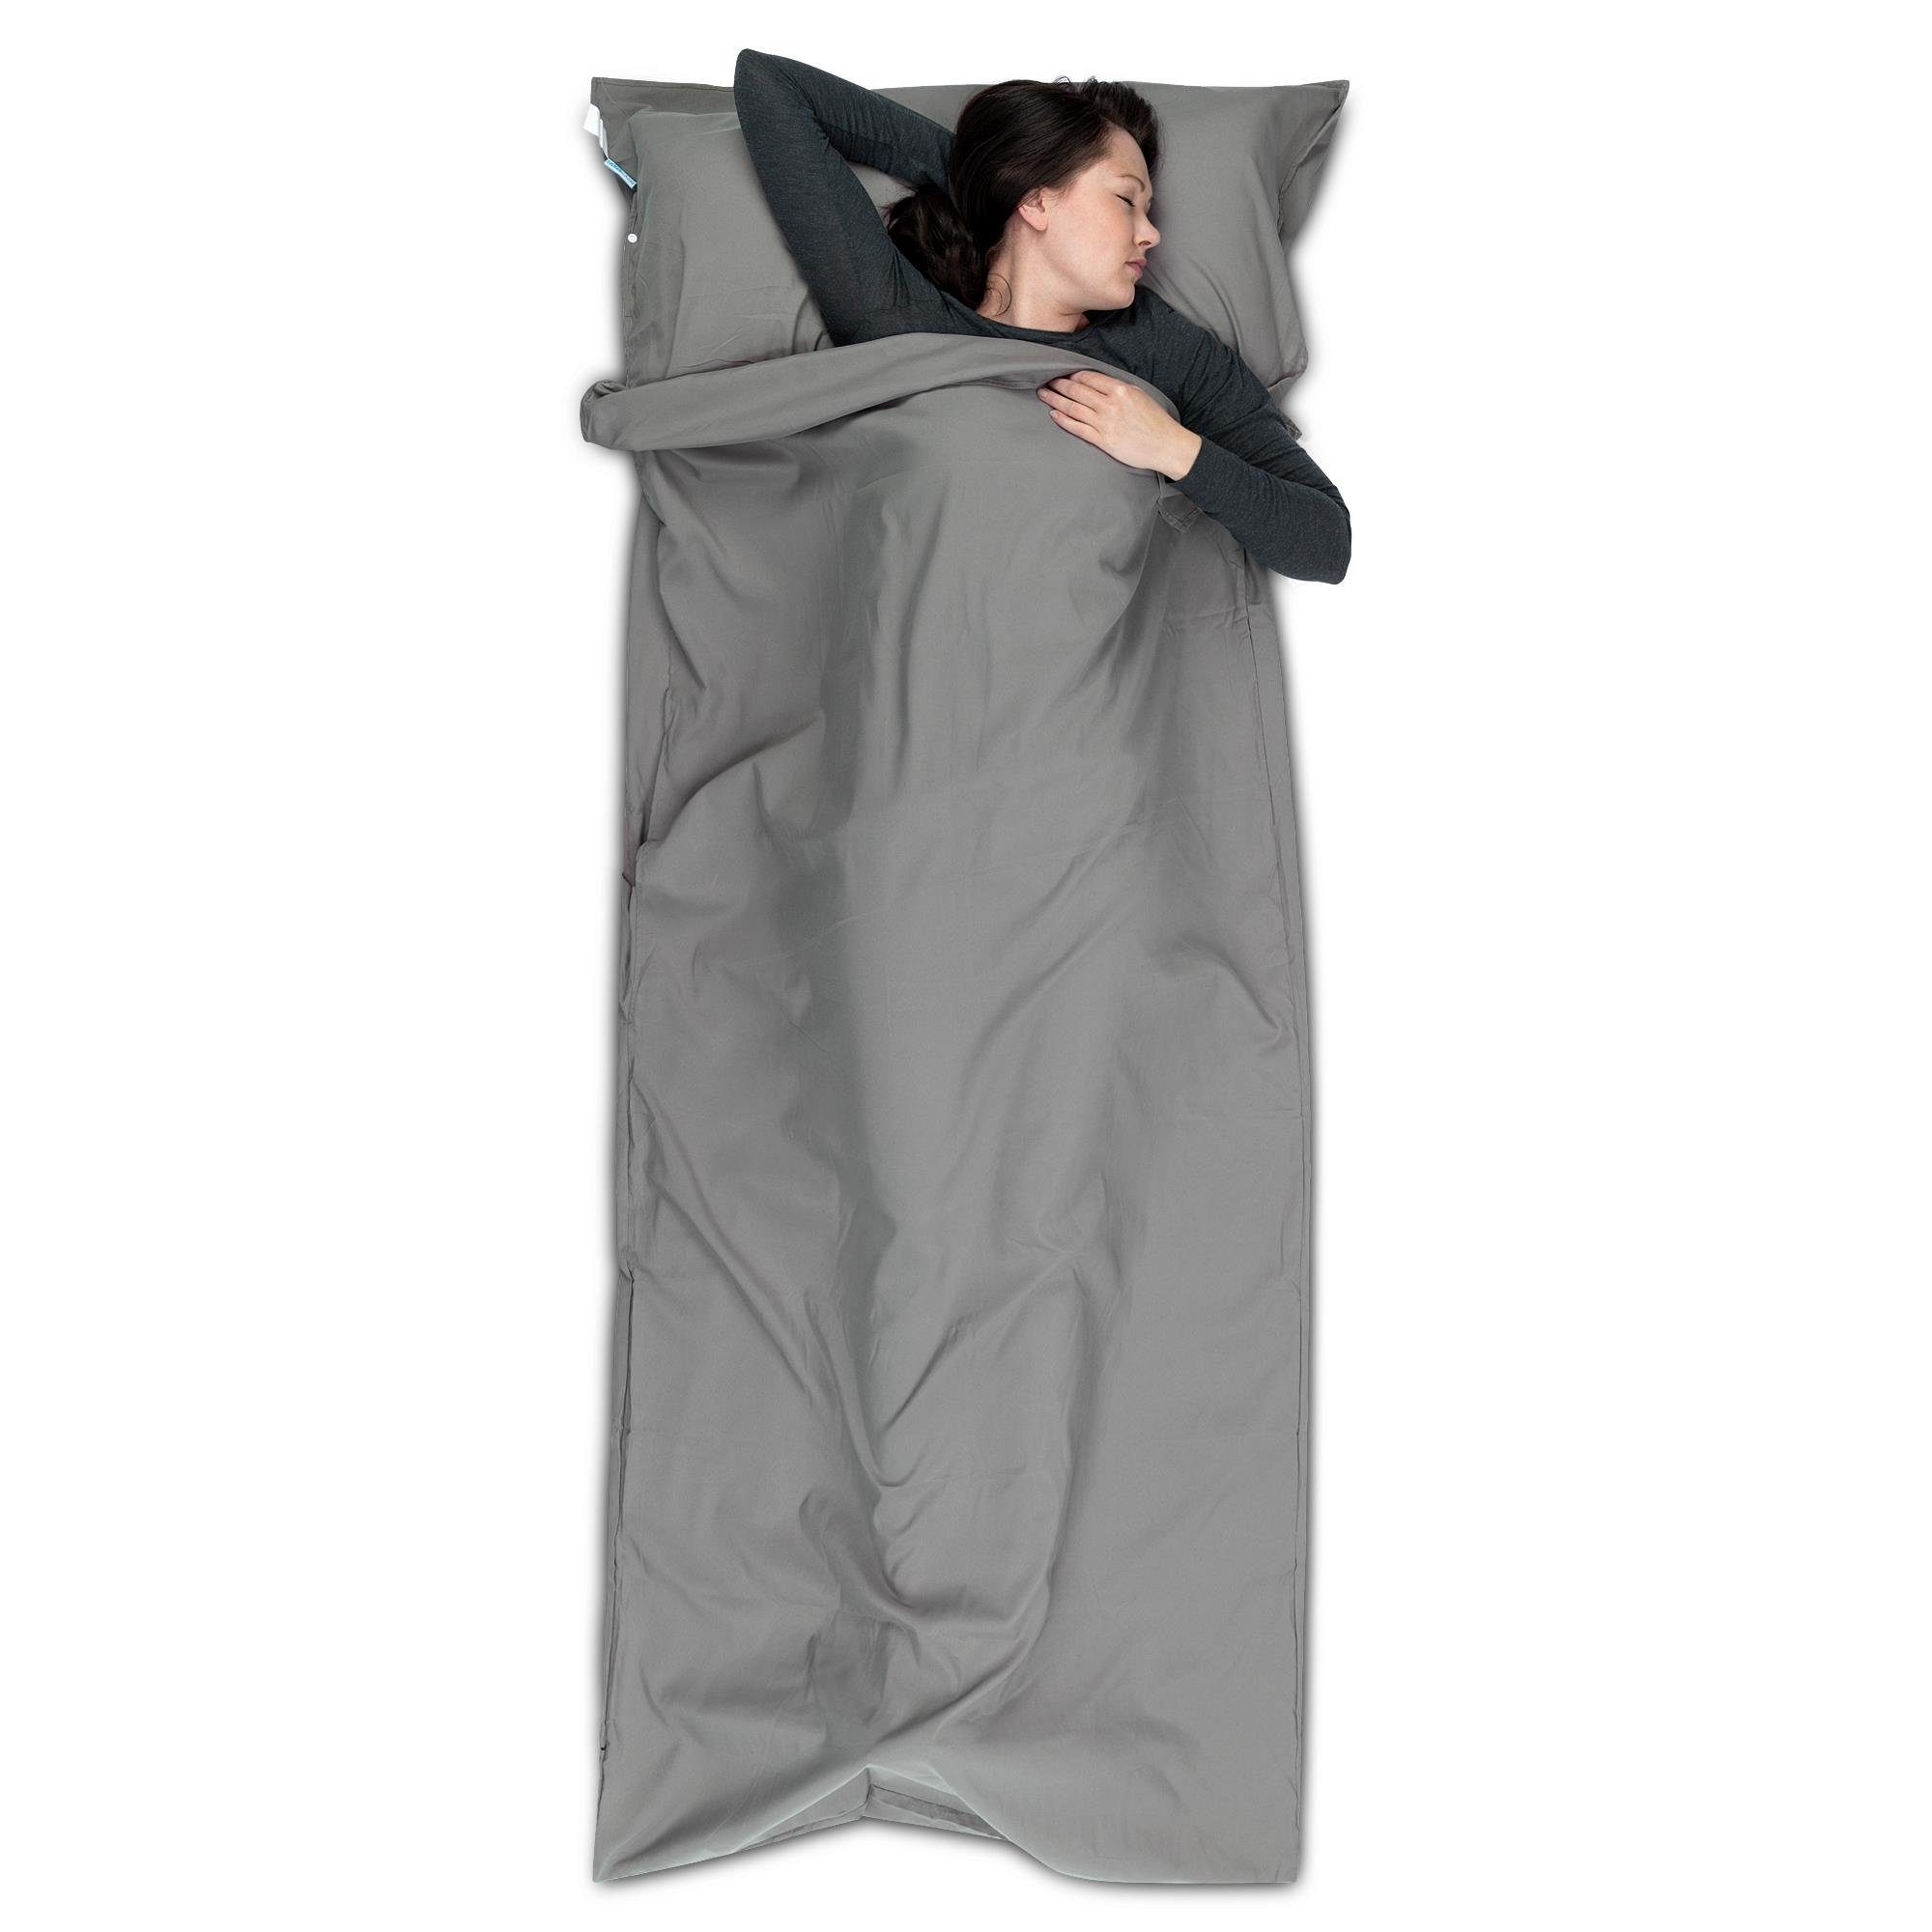 Erwachsenen Schlafsäcke online kaufen | OTTO